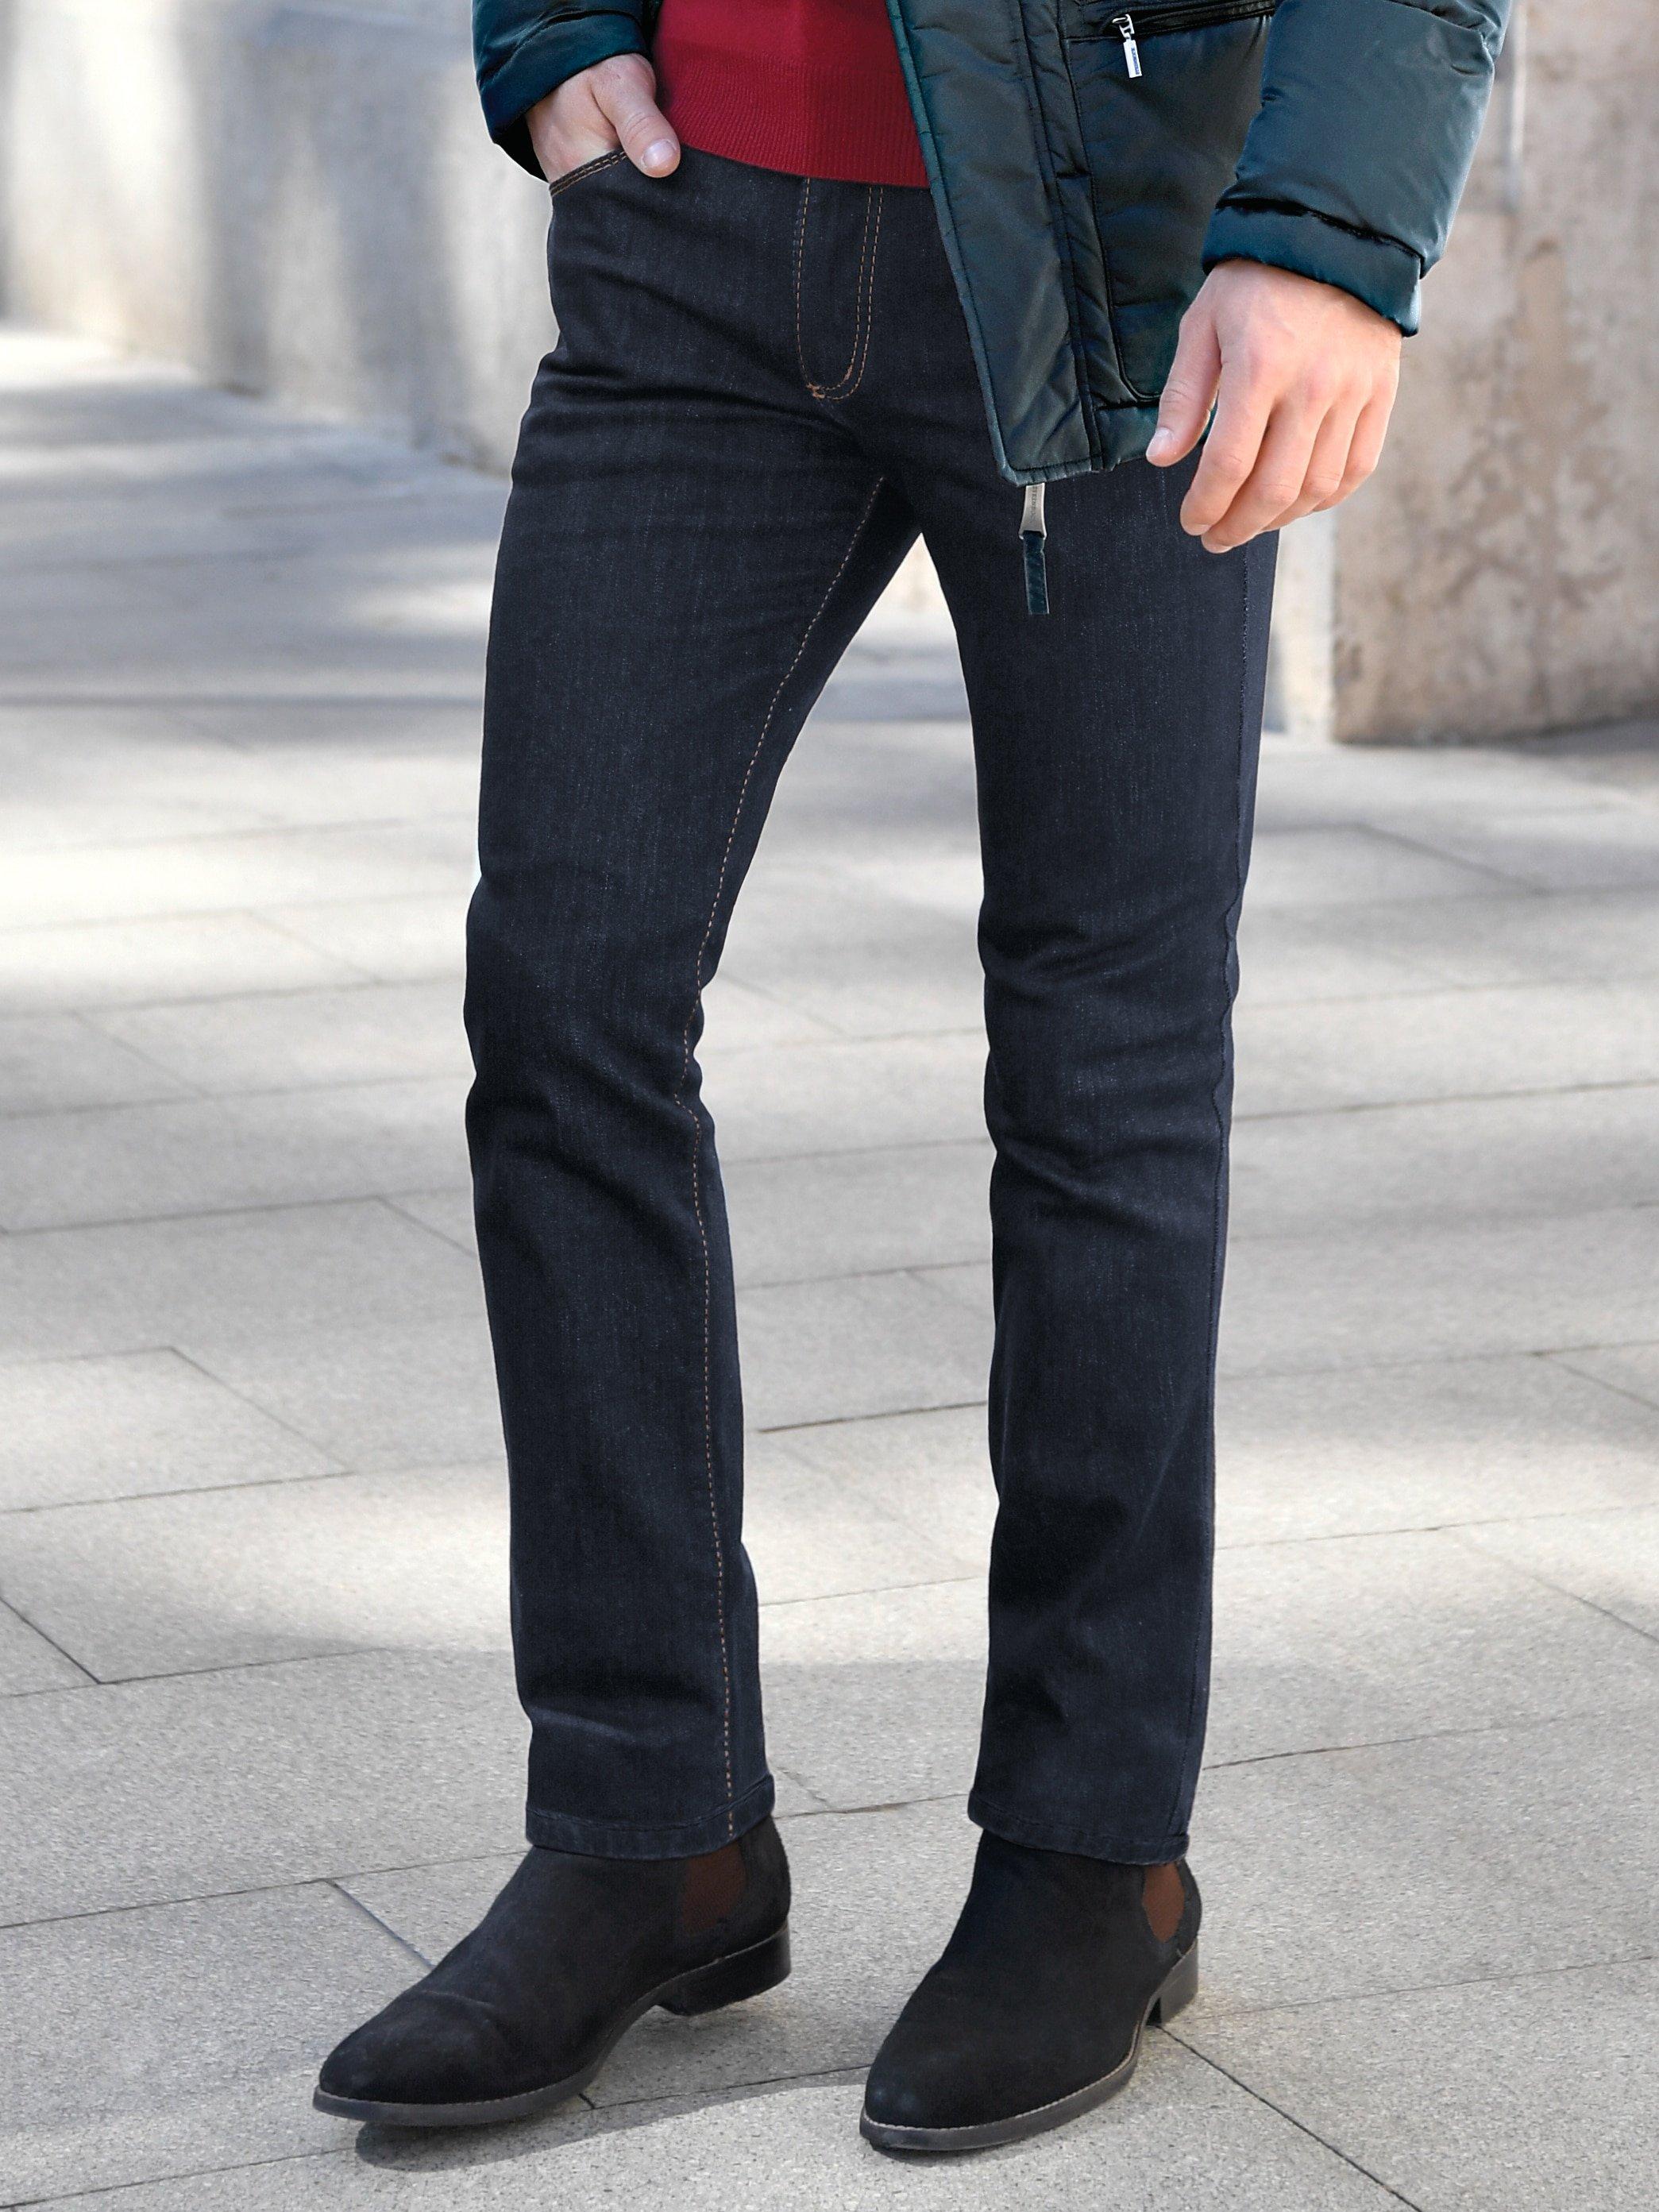 JOKER - Jeans 34 inch - Model FREDDY